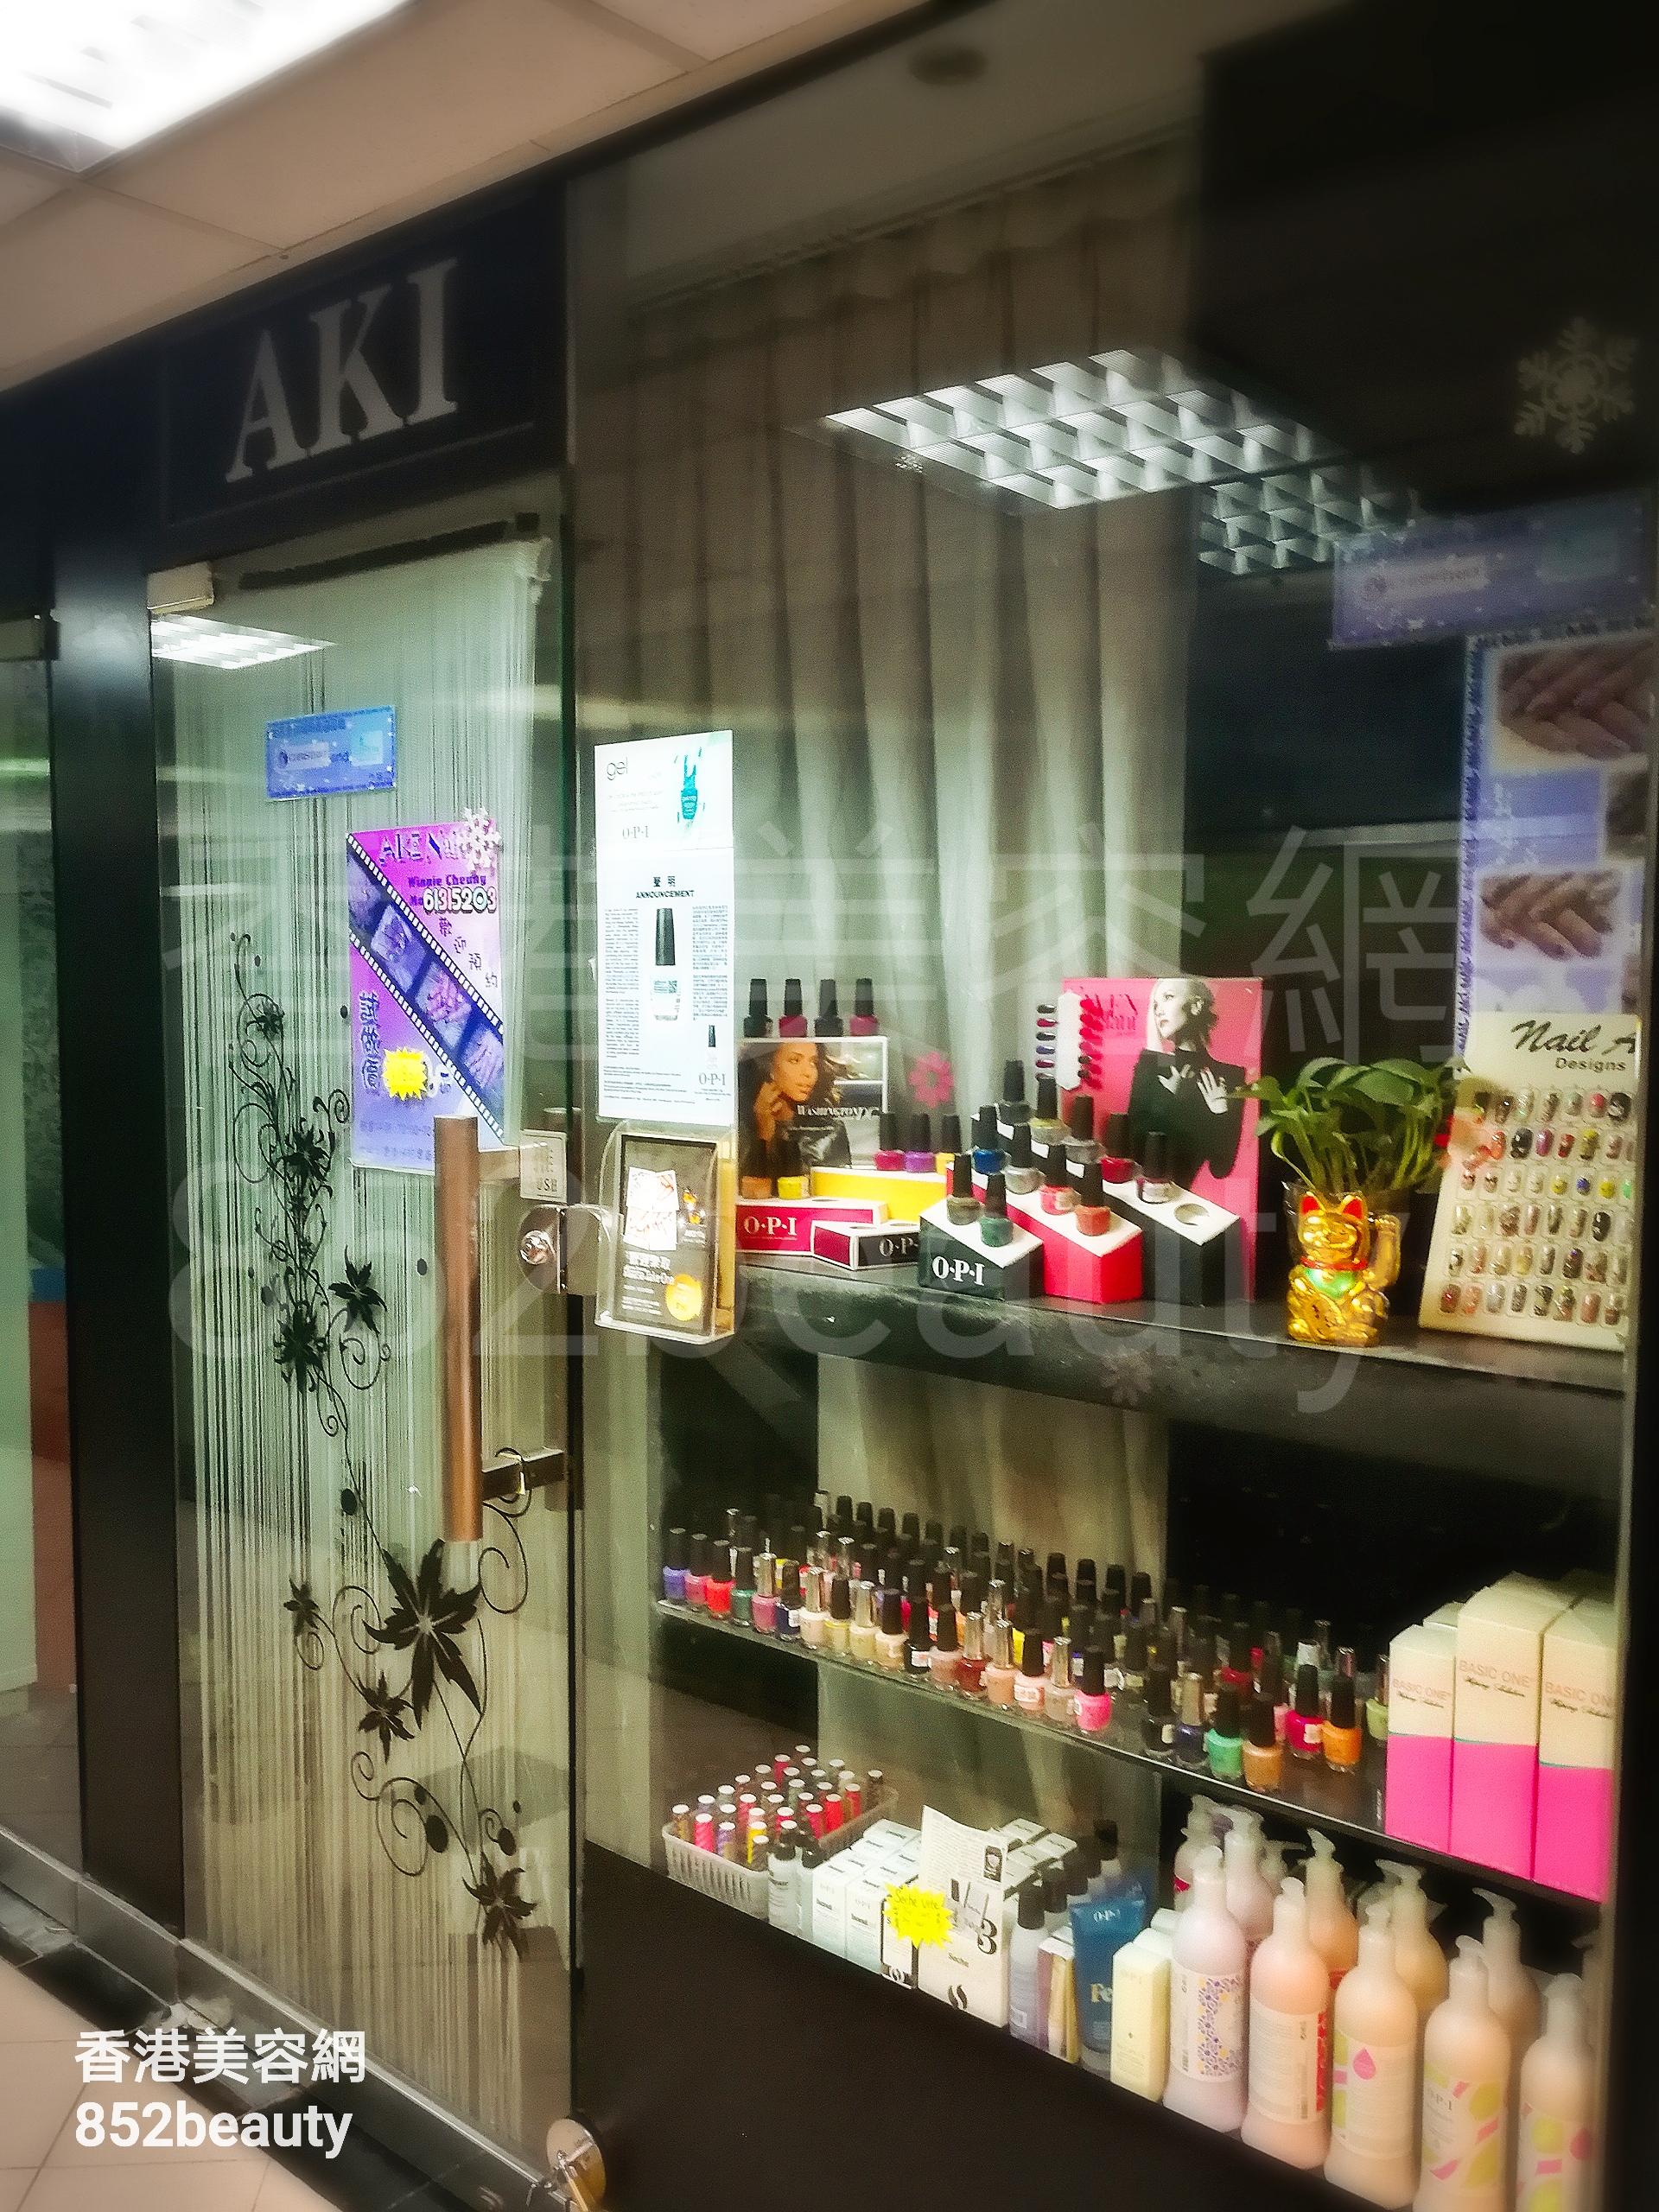 美容院 Beauty Salon: AKI Nail